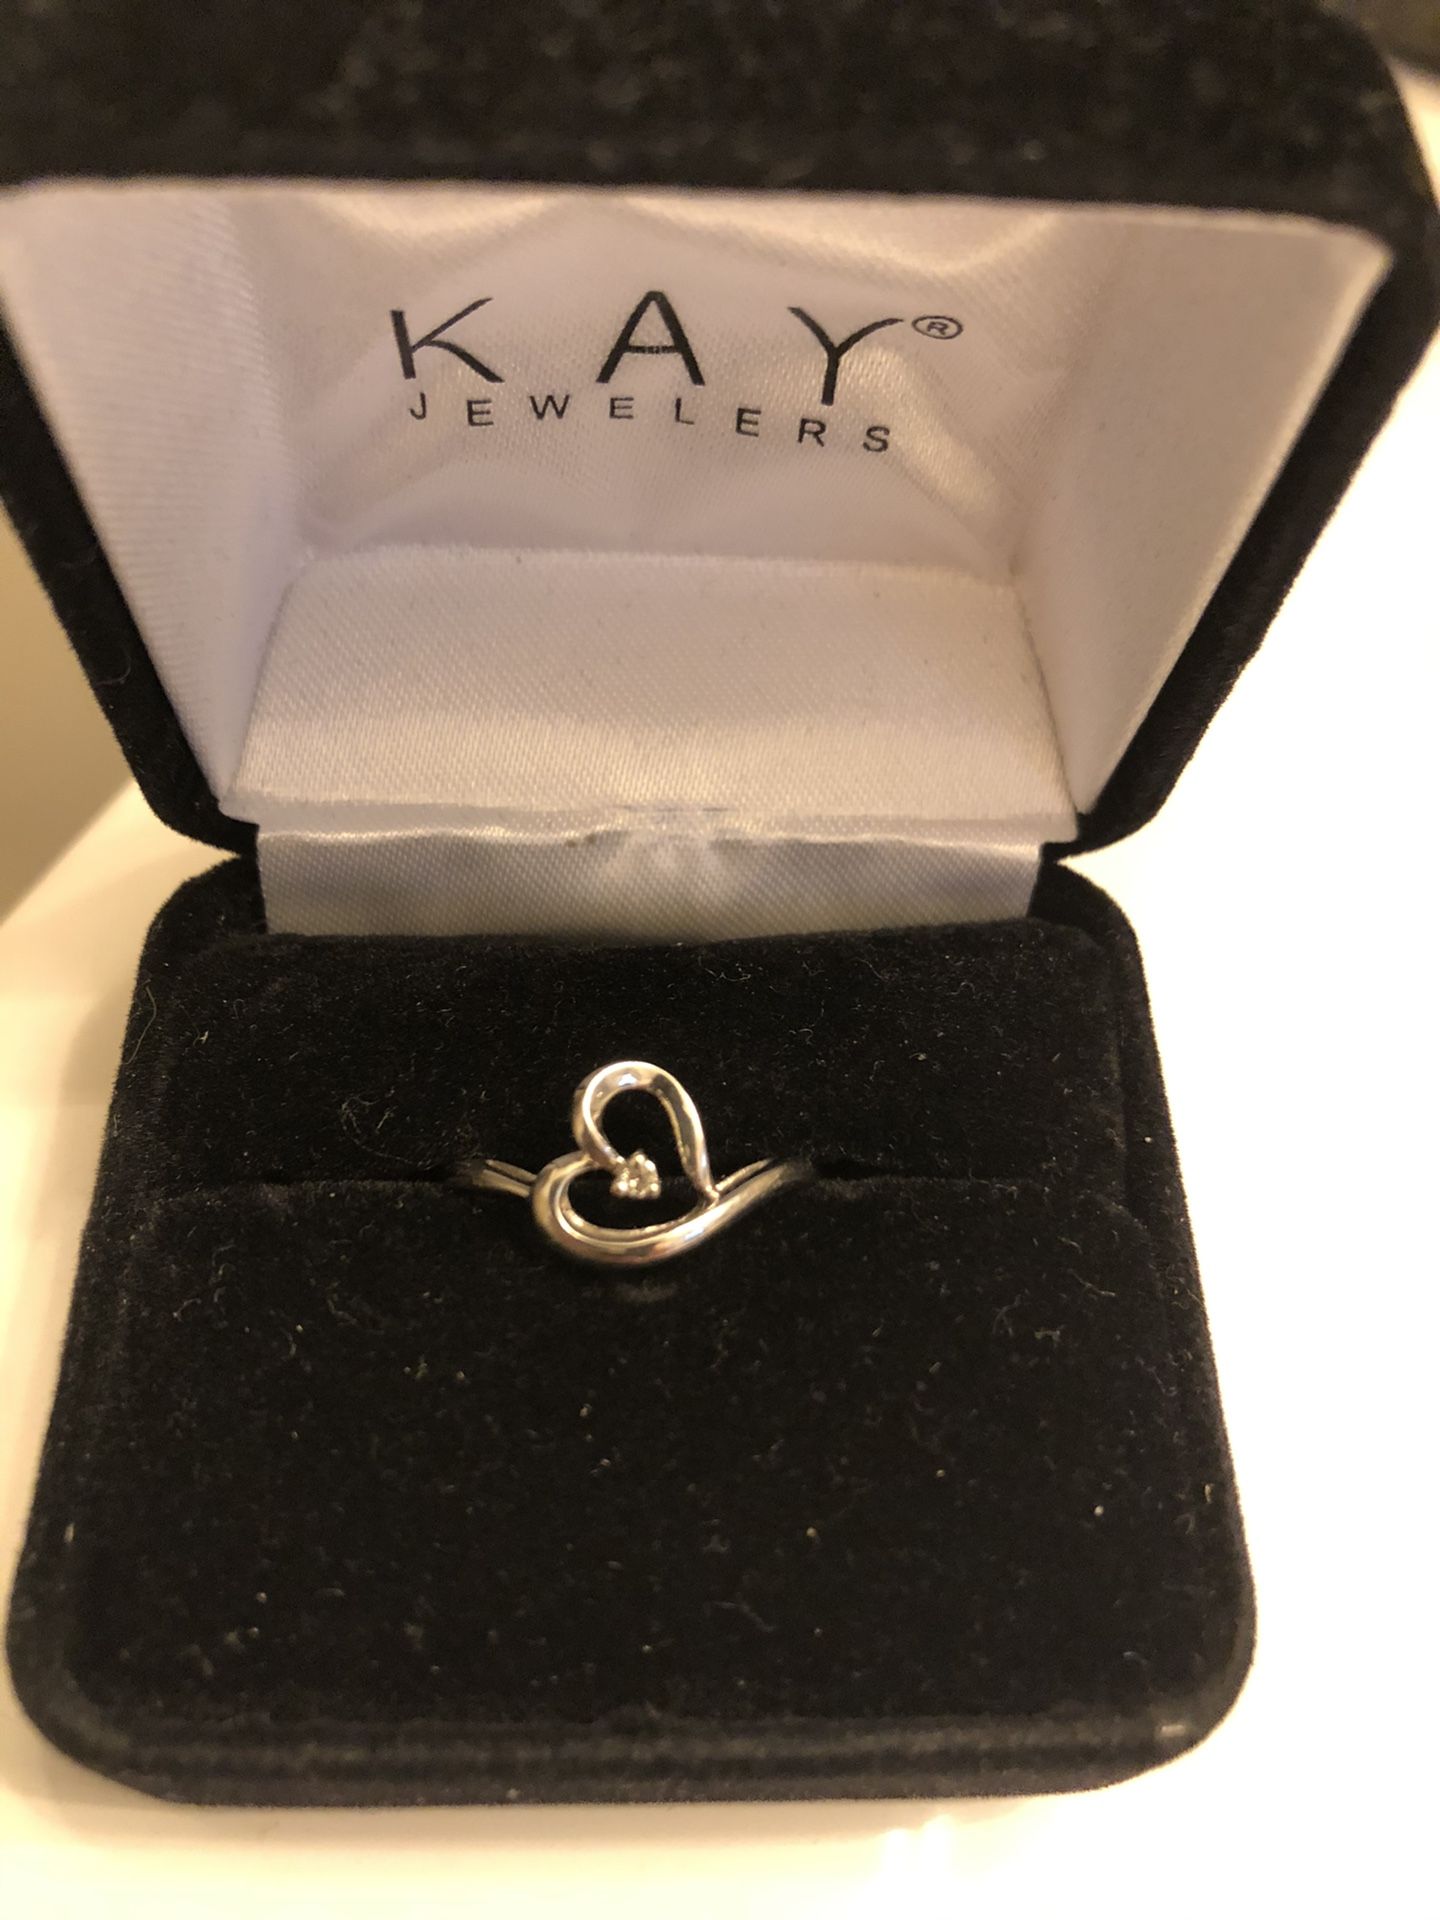 10 karat white gold promise ring. Size 7